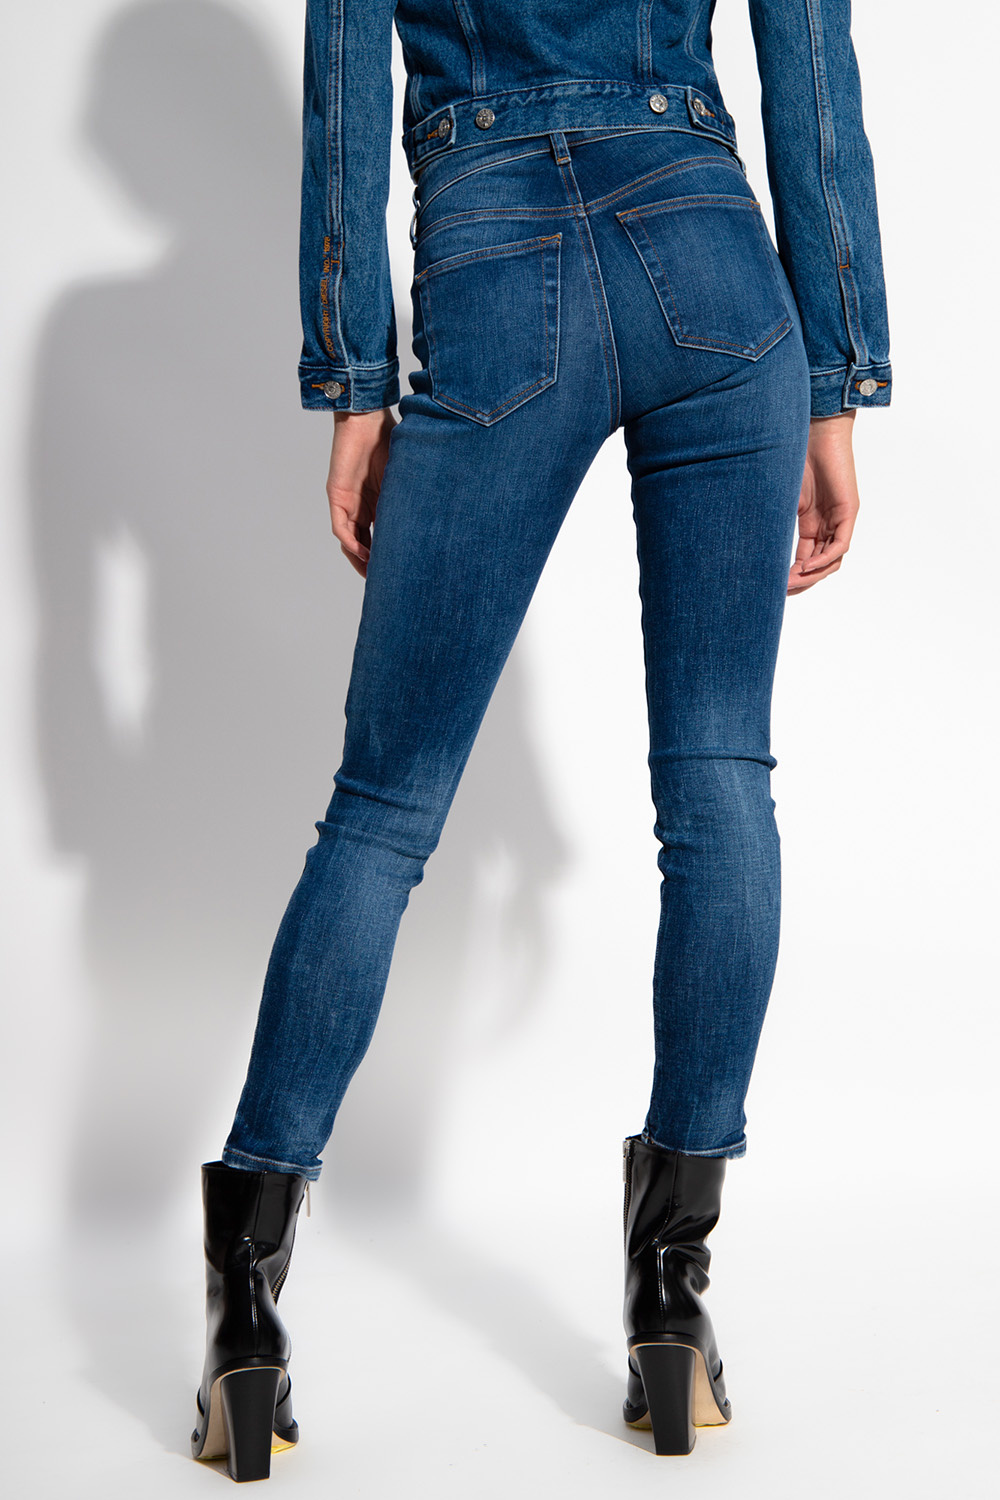 Diesel ‘Slandy’ super skinny jeans